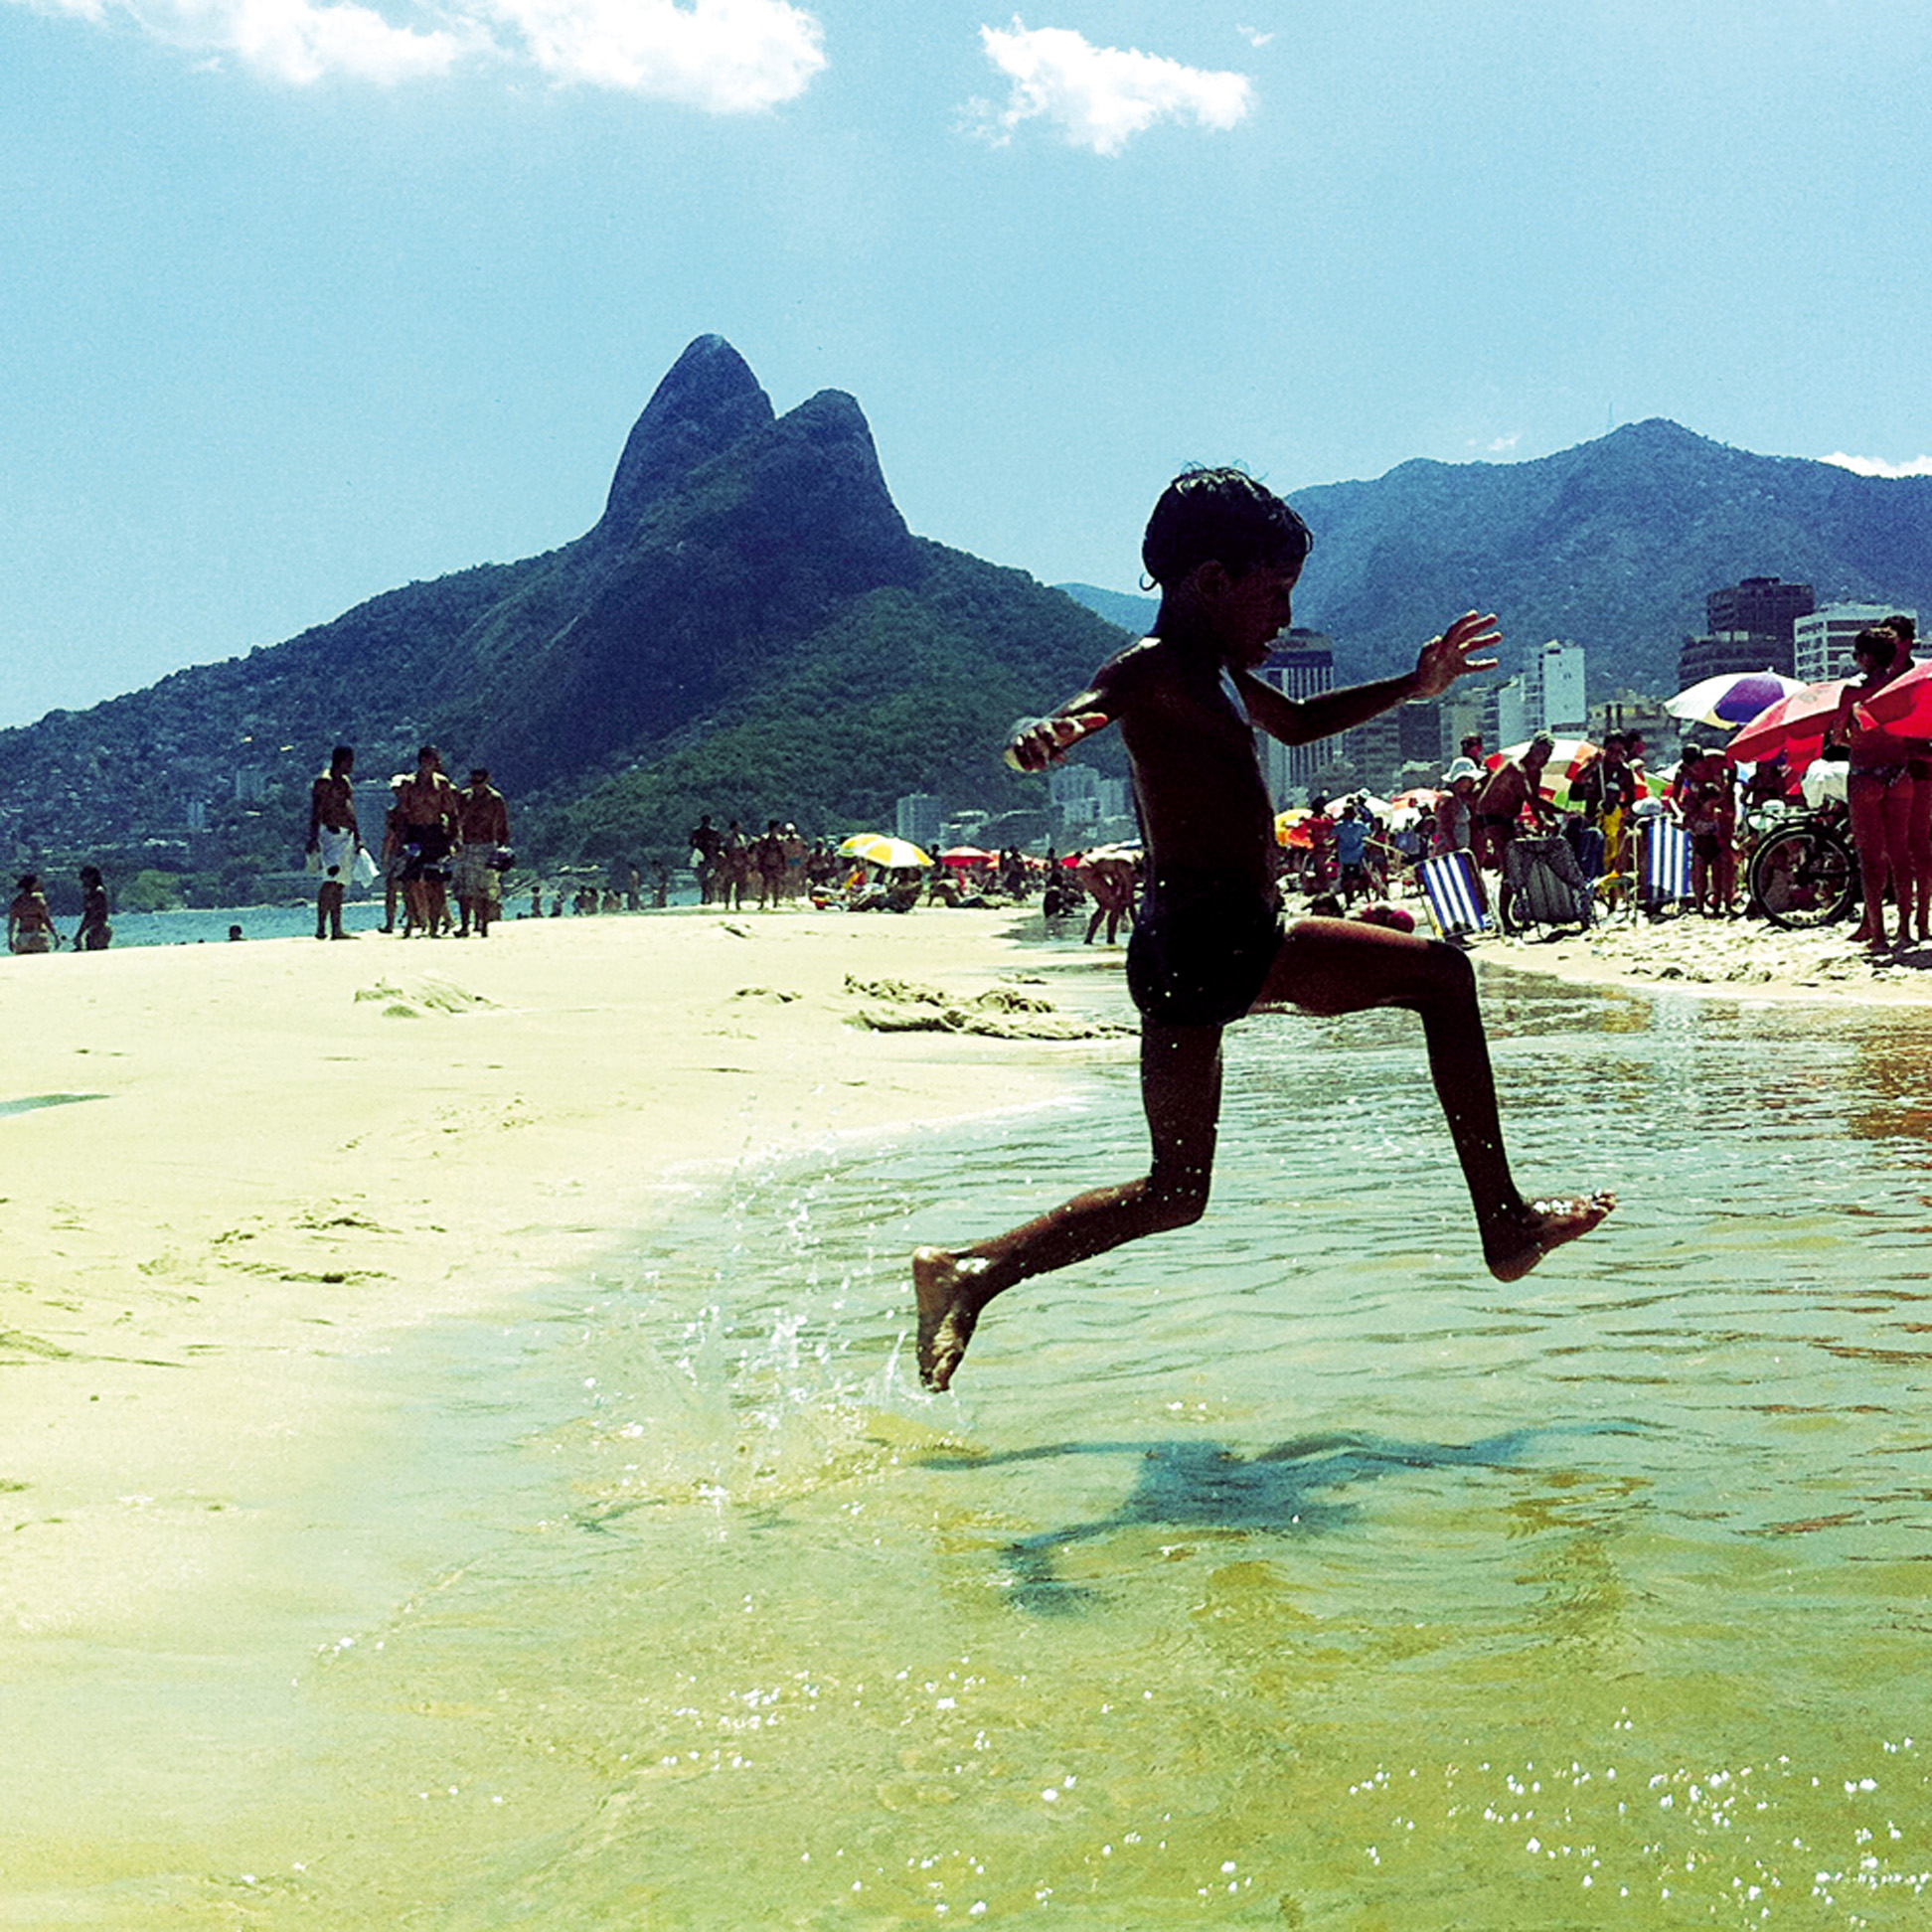 LEONARDO ERVILHA do Rio de Janeiro, RJ / Onde: Ipanema, Rio de Janeiro, RJ / 'Além do contato com a natureza, tem as meninas com pouca roupa'